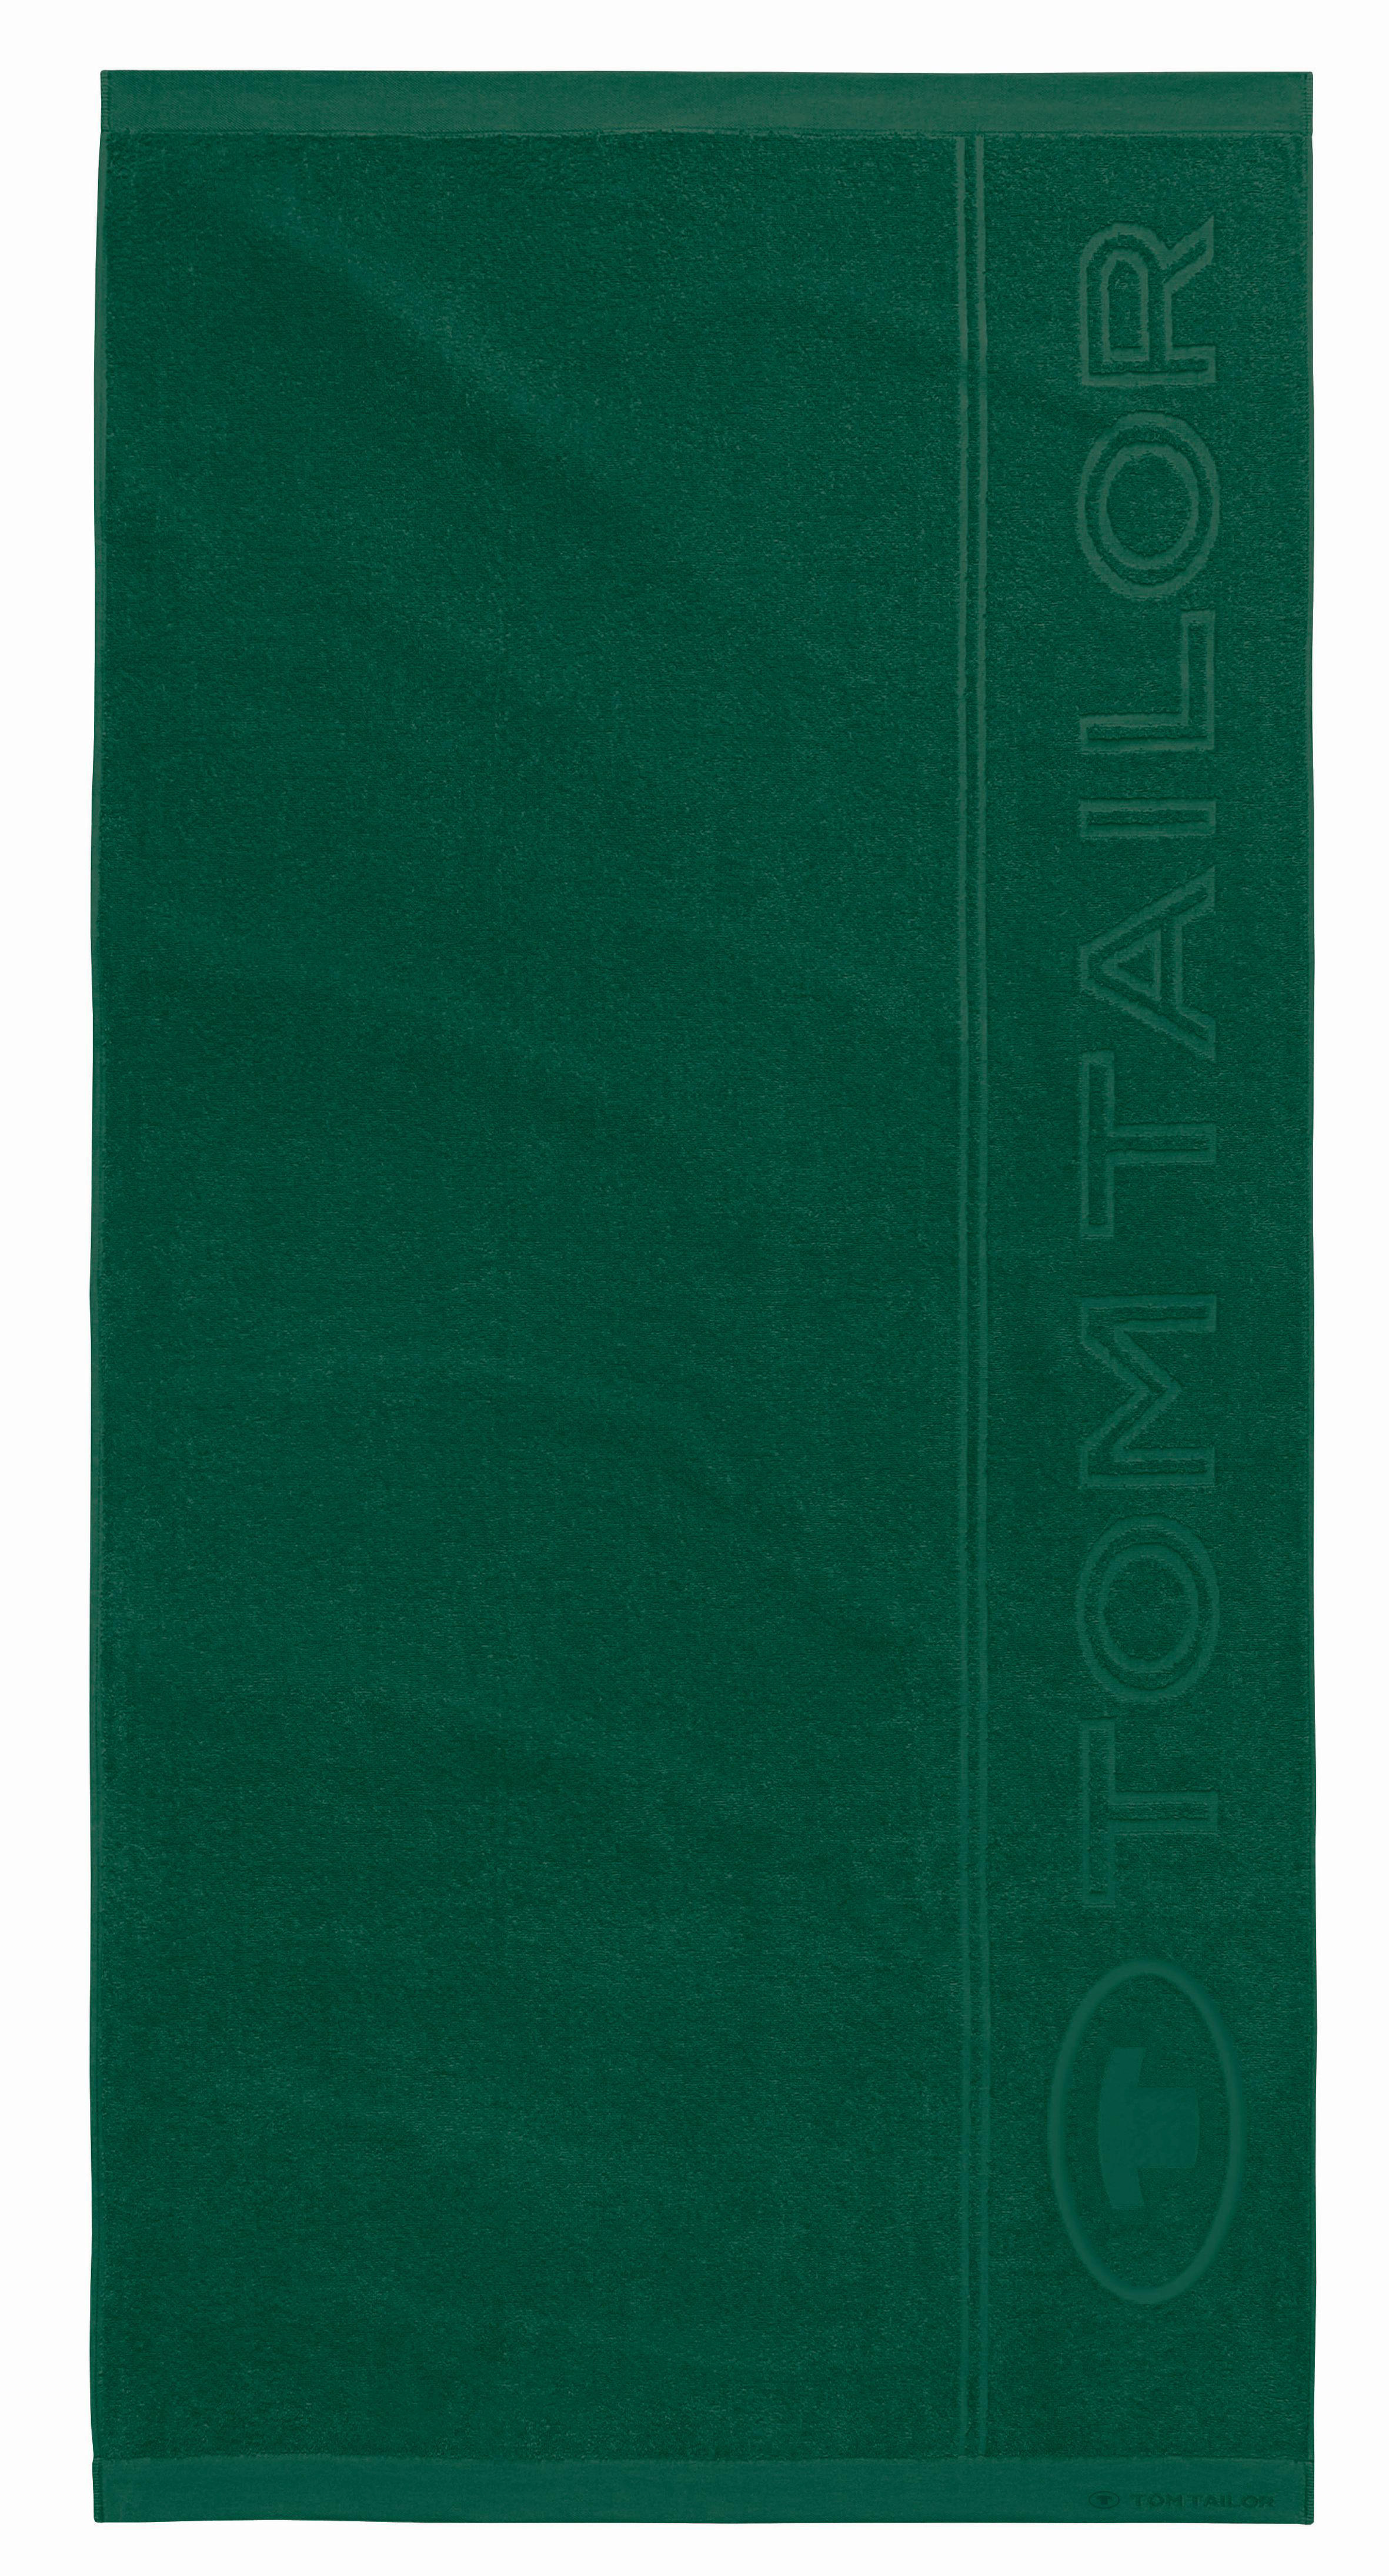 STRANDTUCH 100119 90X180 90/180 cm  - Dunkelgrün, KONVENTIONELL, Textil (90/180cm) - Tom Tailor